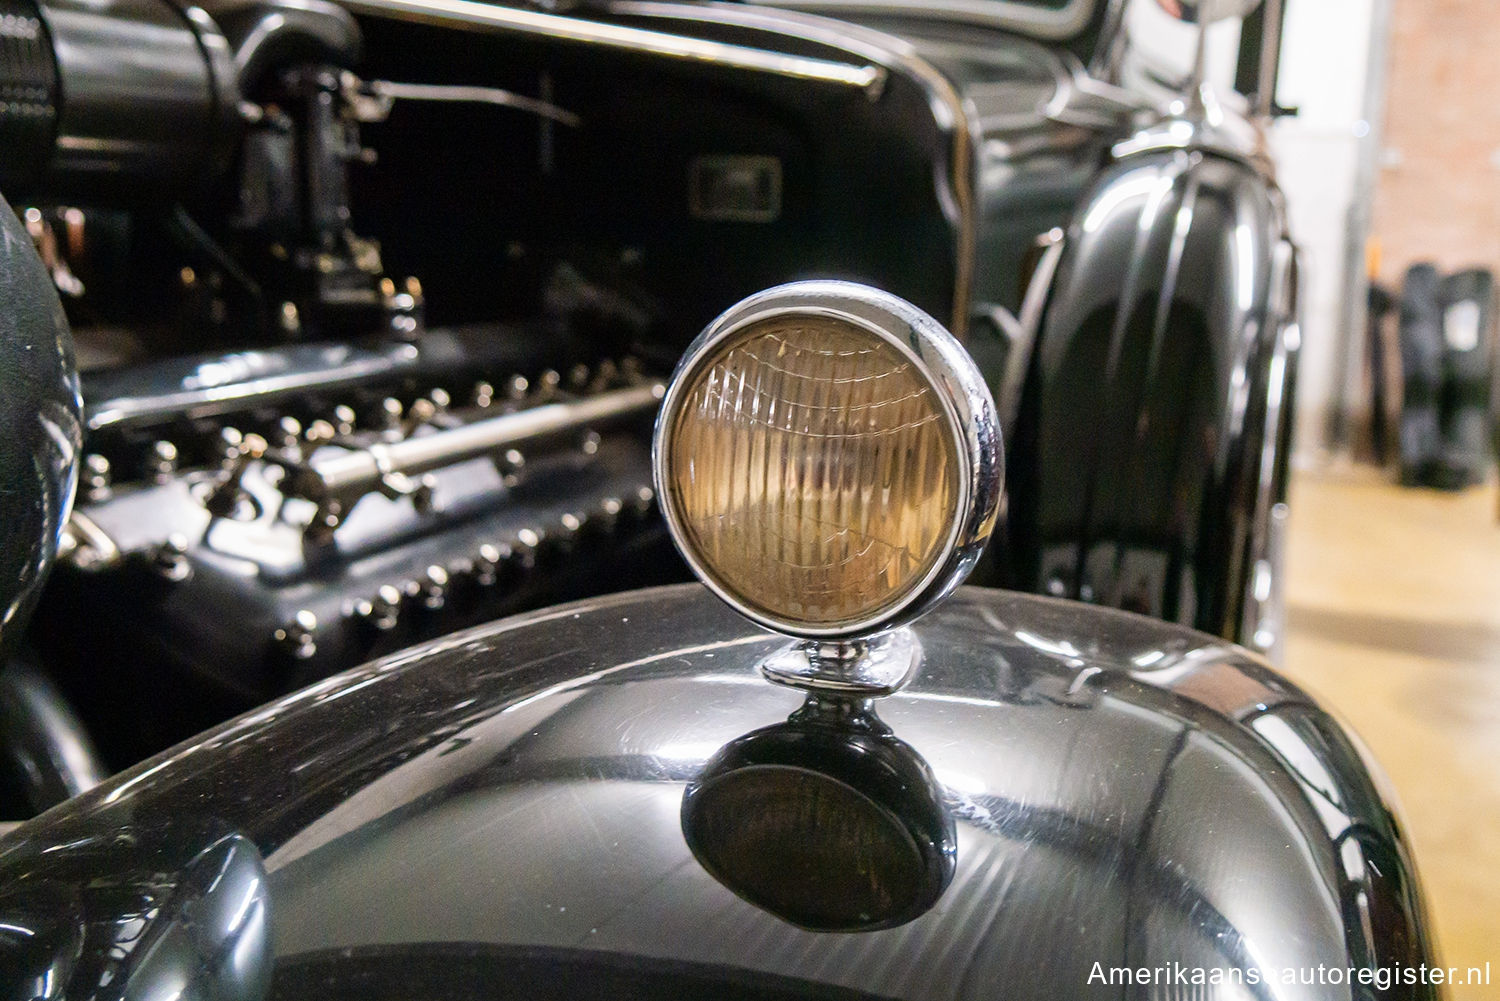 Lincoln K Series uit 1933